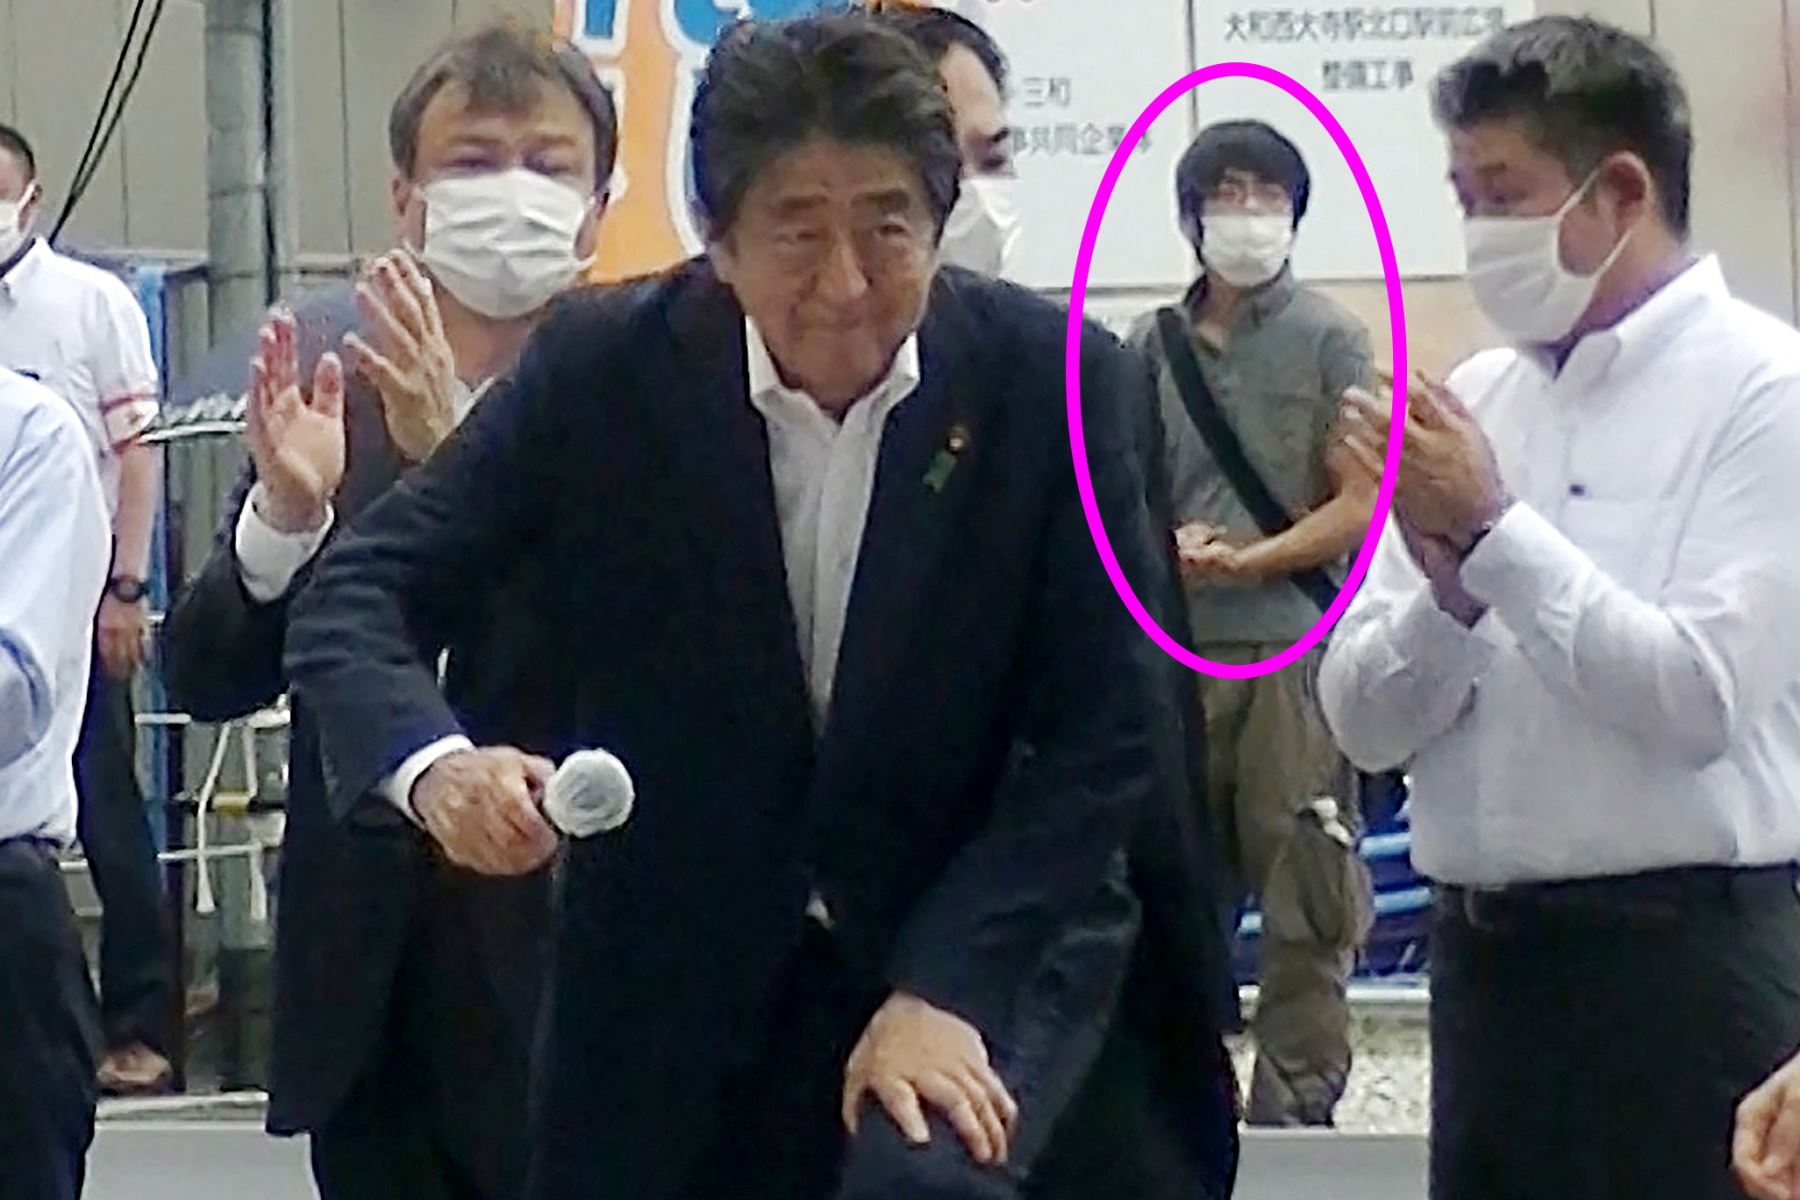 El ex primer ministro japonés Shinzo Abe, de 67 años, murió este viernes en el hospital tras sufrir un ataque con arma de fuego en un acto de campaña política en Nara (oeste). Foto: AFP